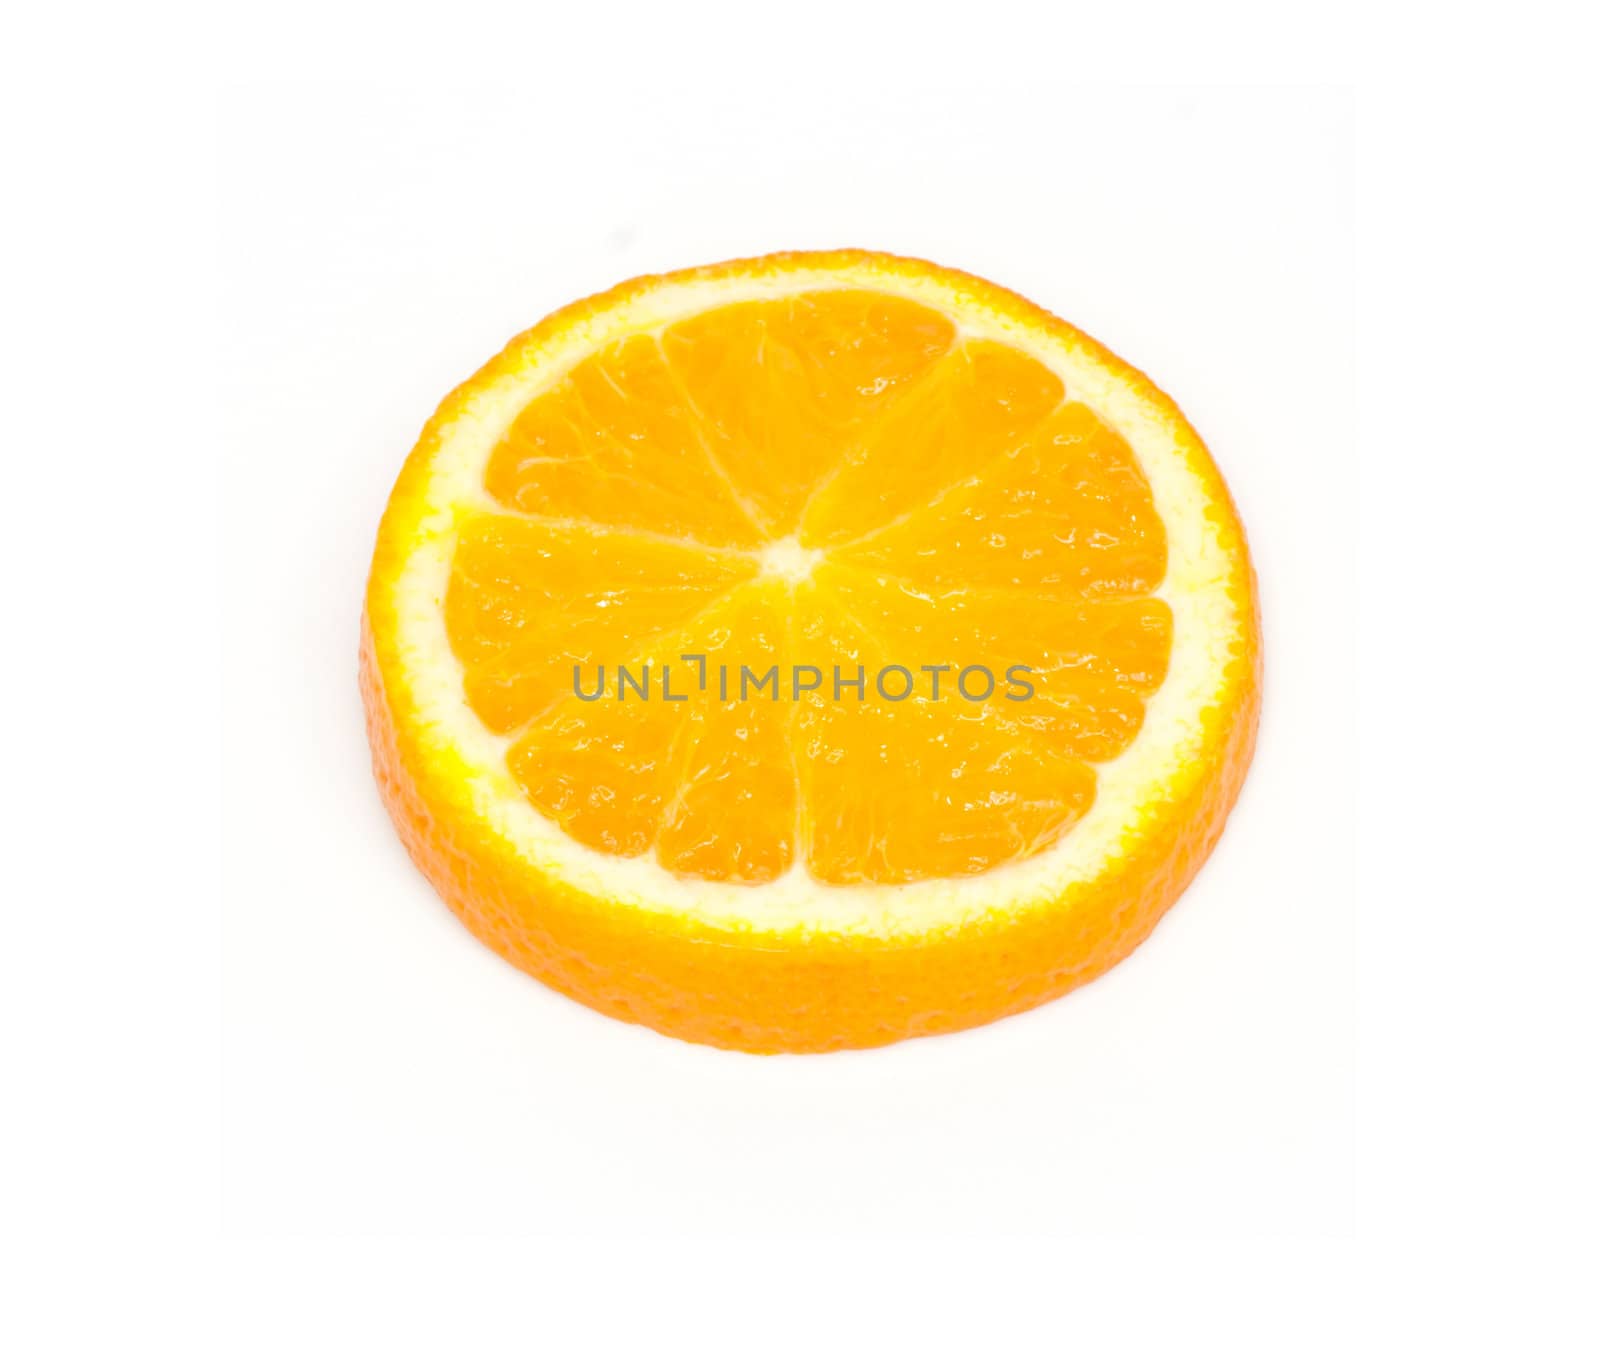 Slice of orange. isolated on white. 